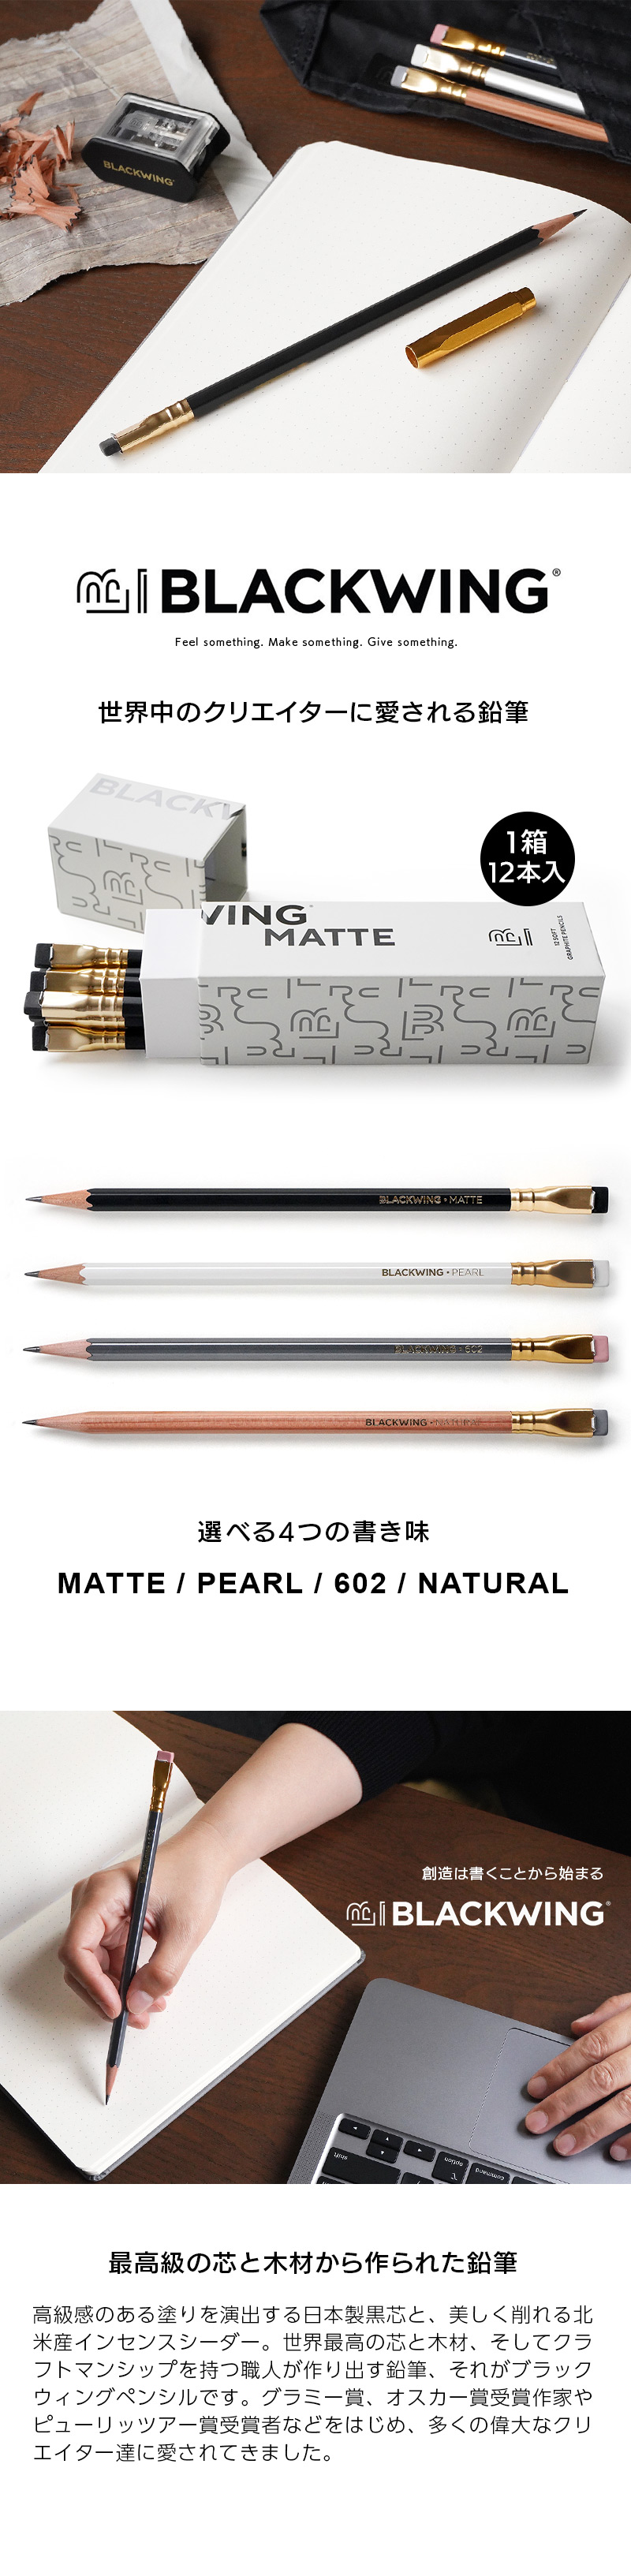 BLACKWING 世界中のクリエイターに愛される鉛筆 選べる4つの書き味 最高級の芯と木材から作られた鉛筆。ダース 1箱 12本入り